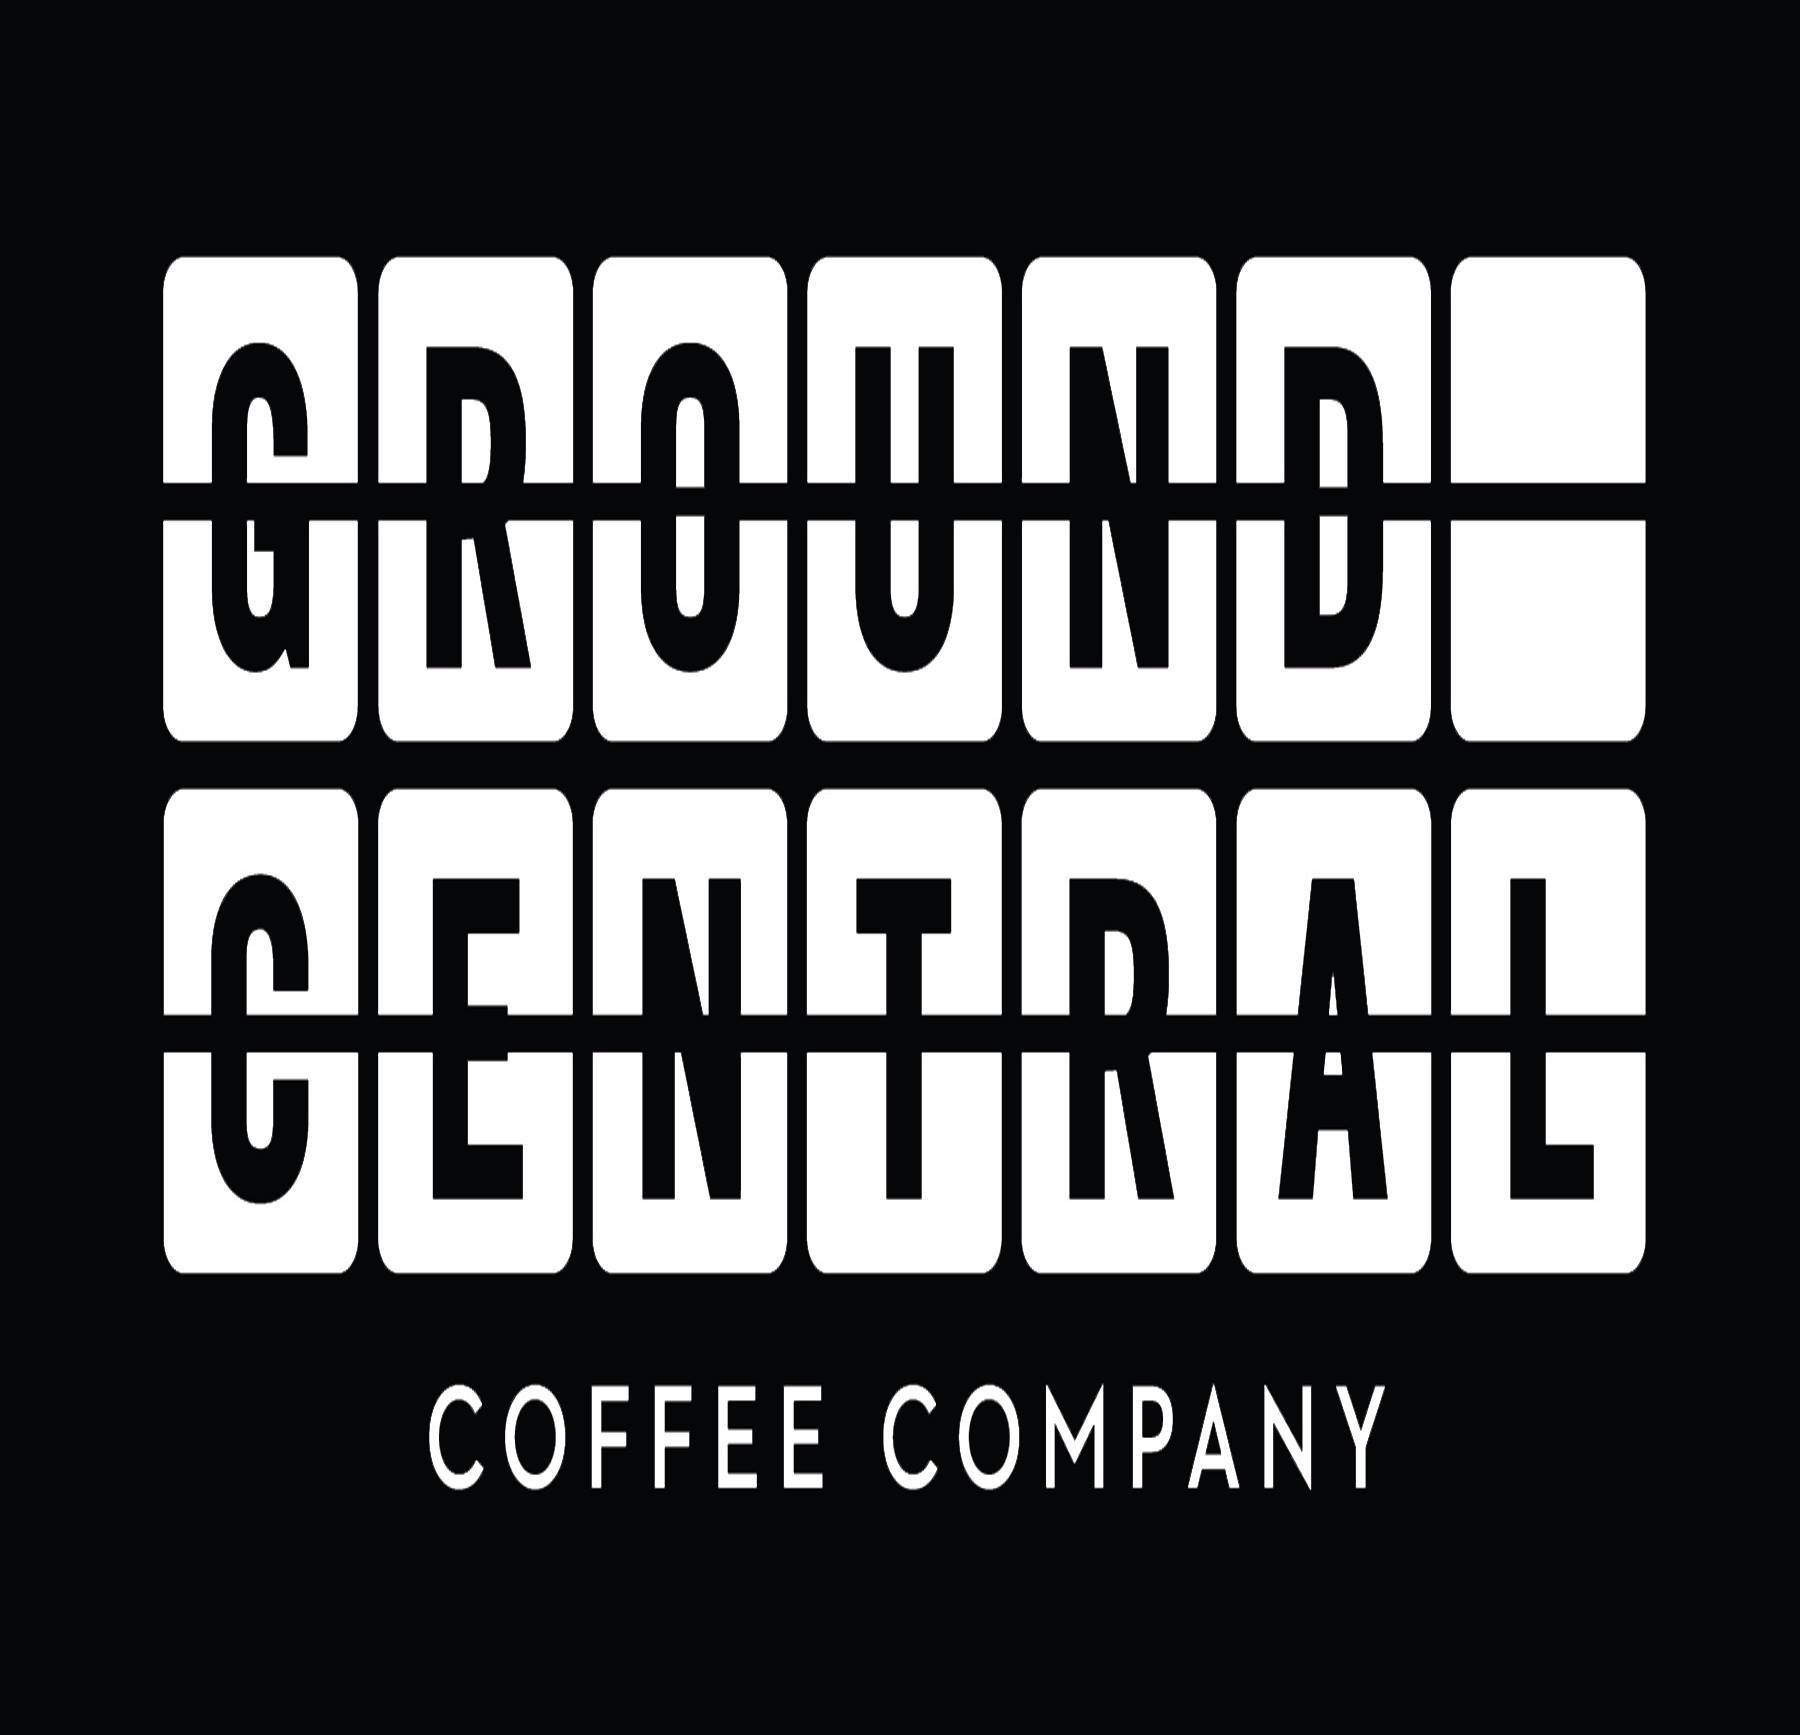 Ground Central